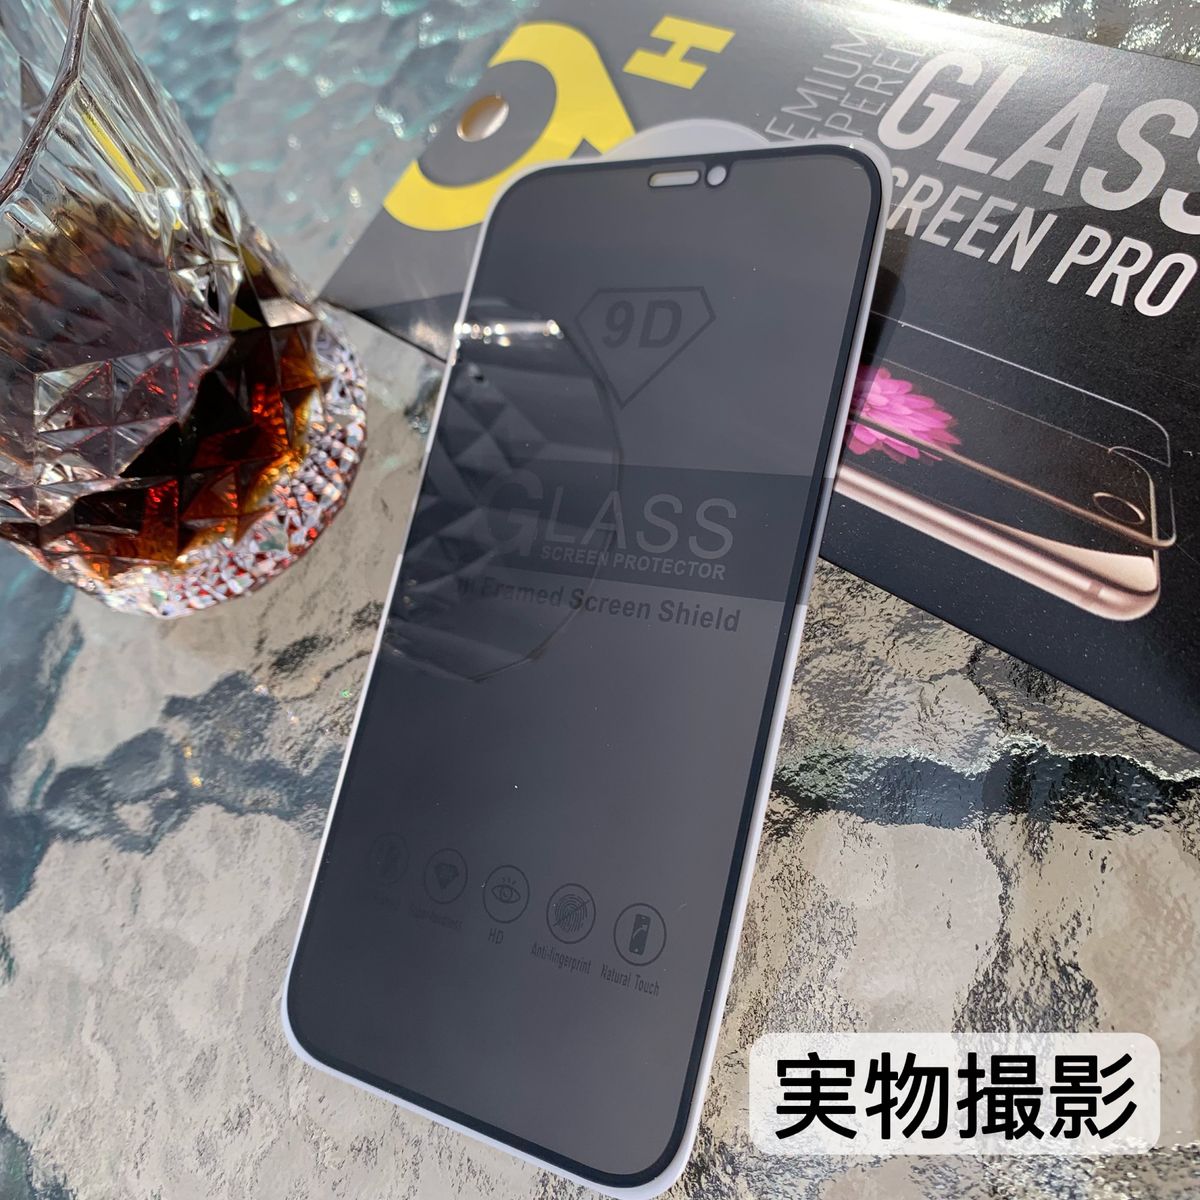 IPhone14plus 覗き見防止 フィルム 二枚セット ガラスフィルム 